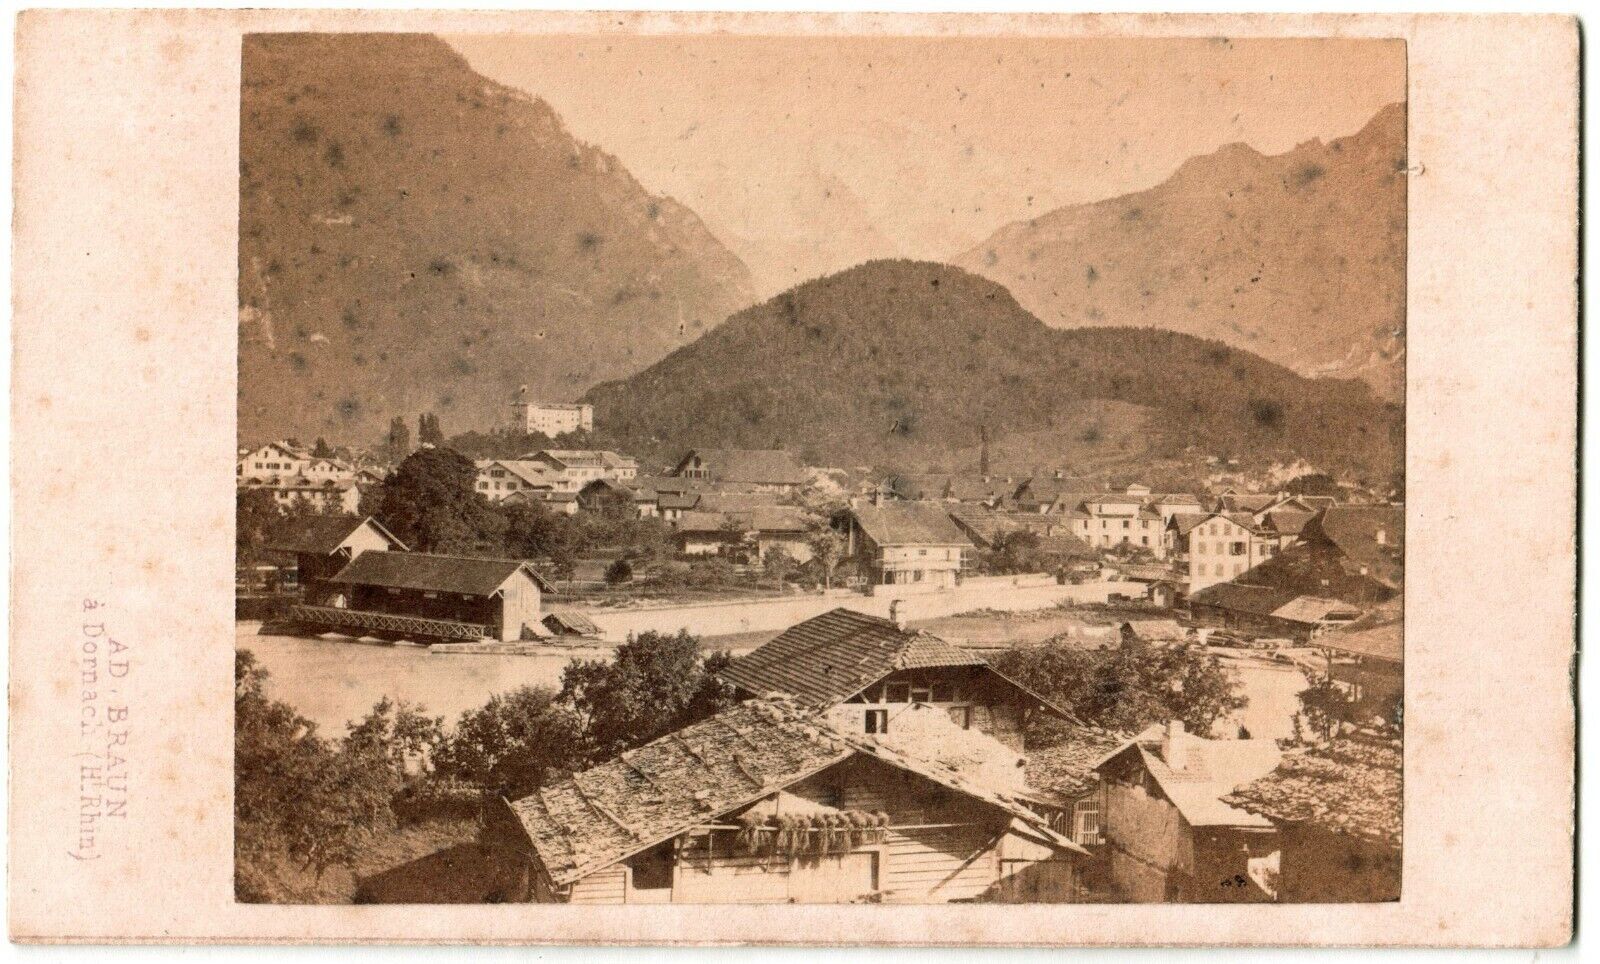 Cdv.Suisse.Interlaken.Switzerland.Switzerland.Photo albumin A.Braun.1870.Albumen.